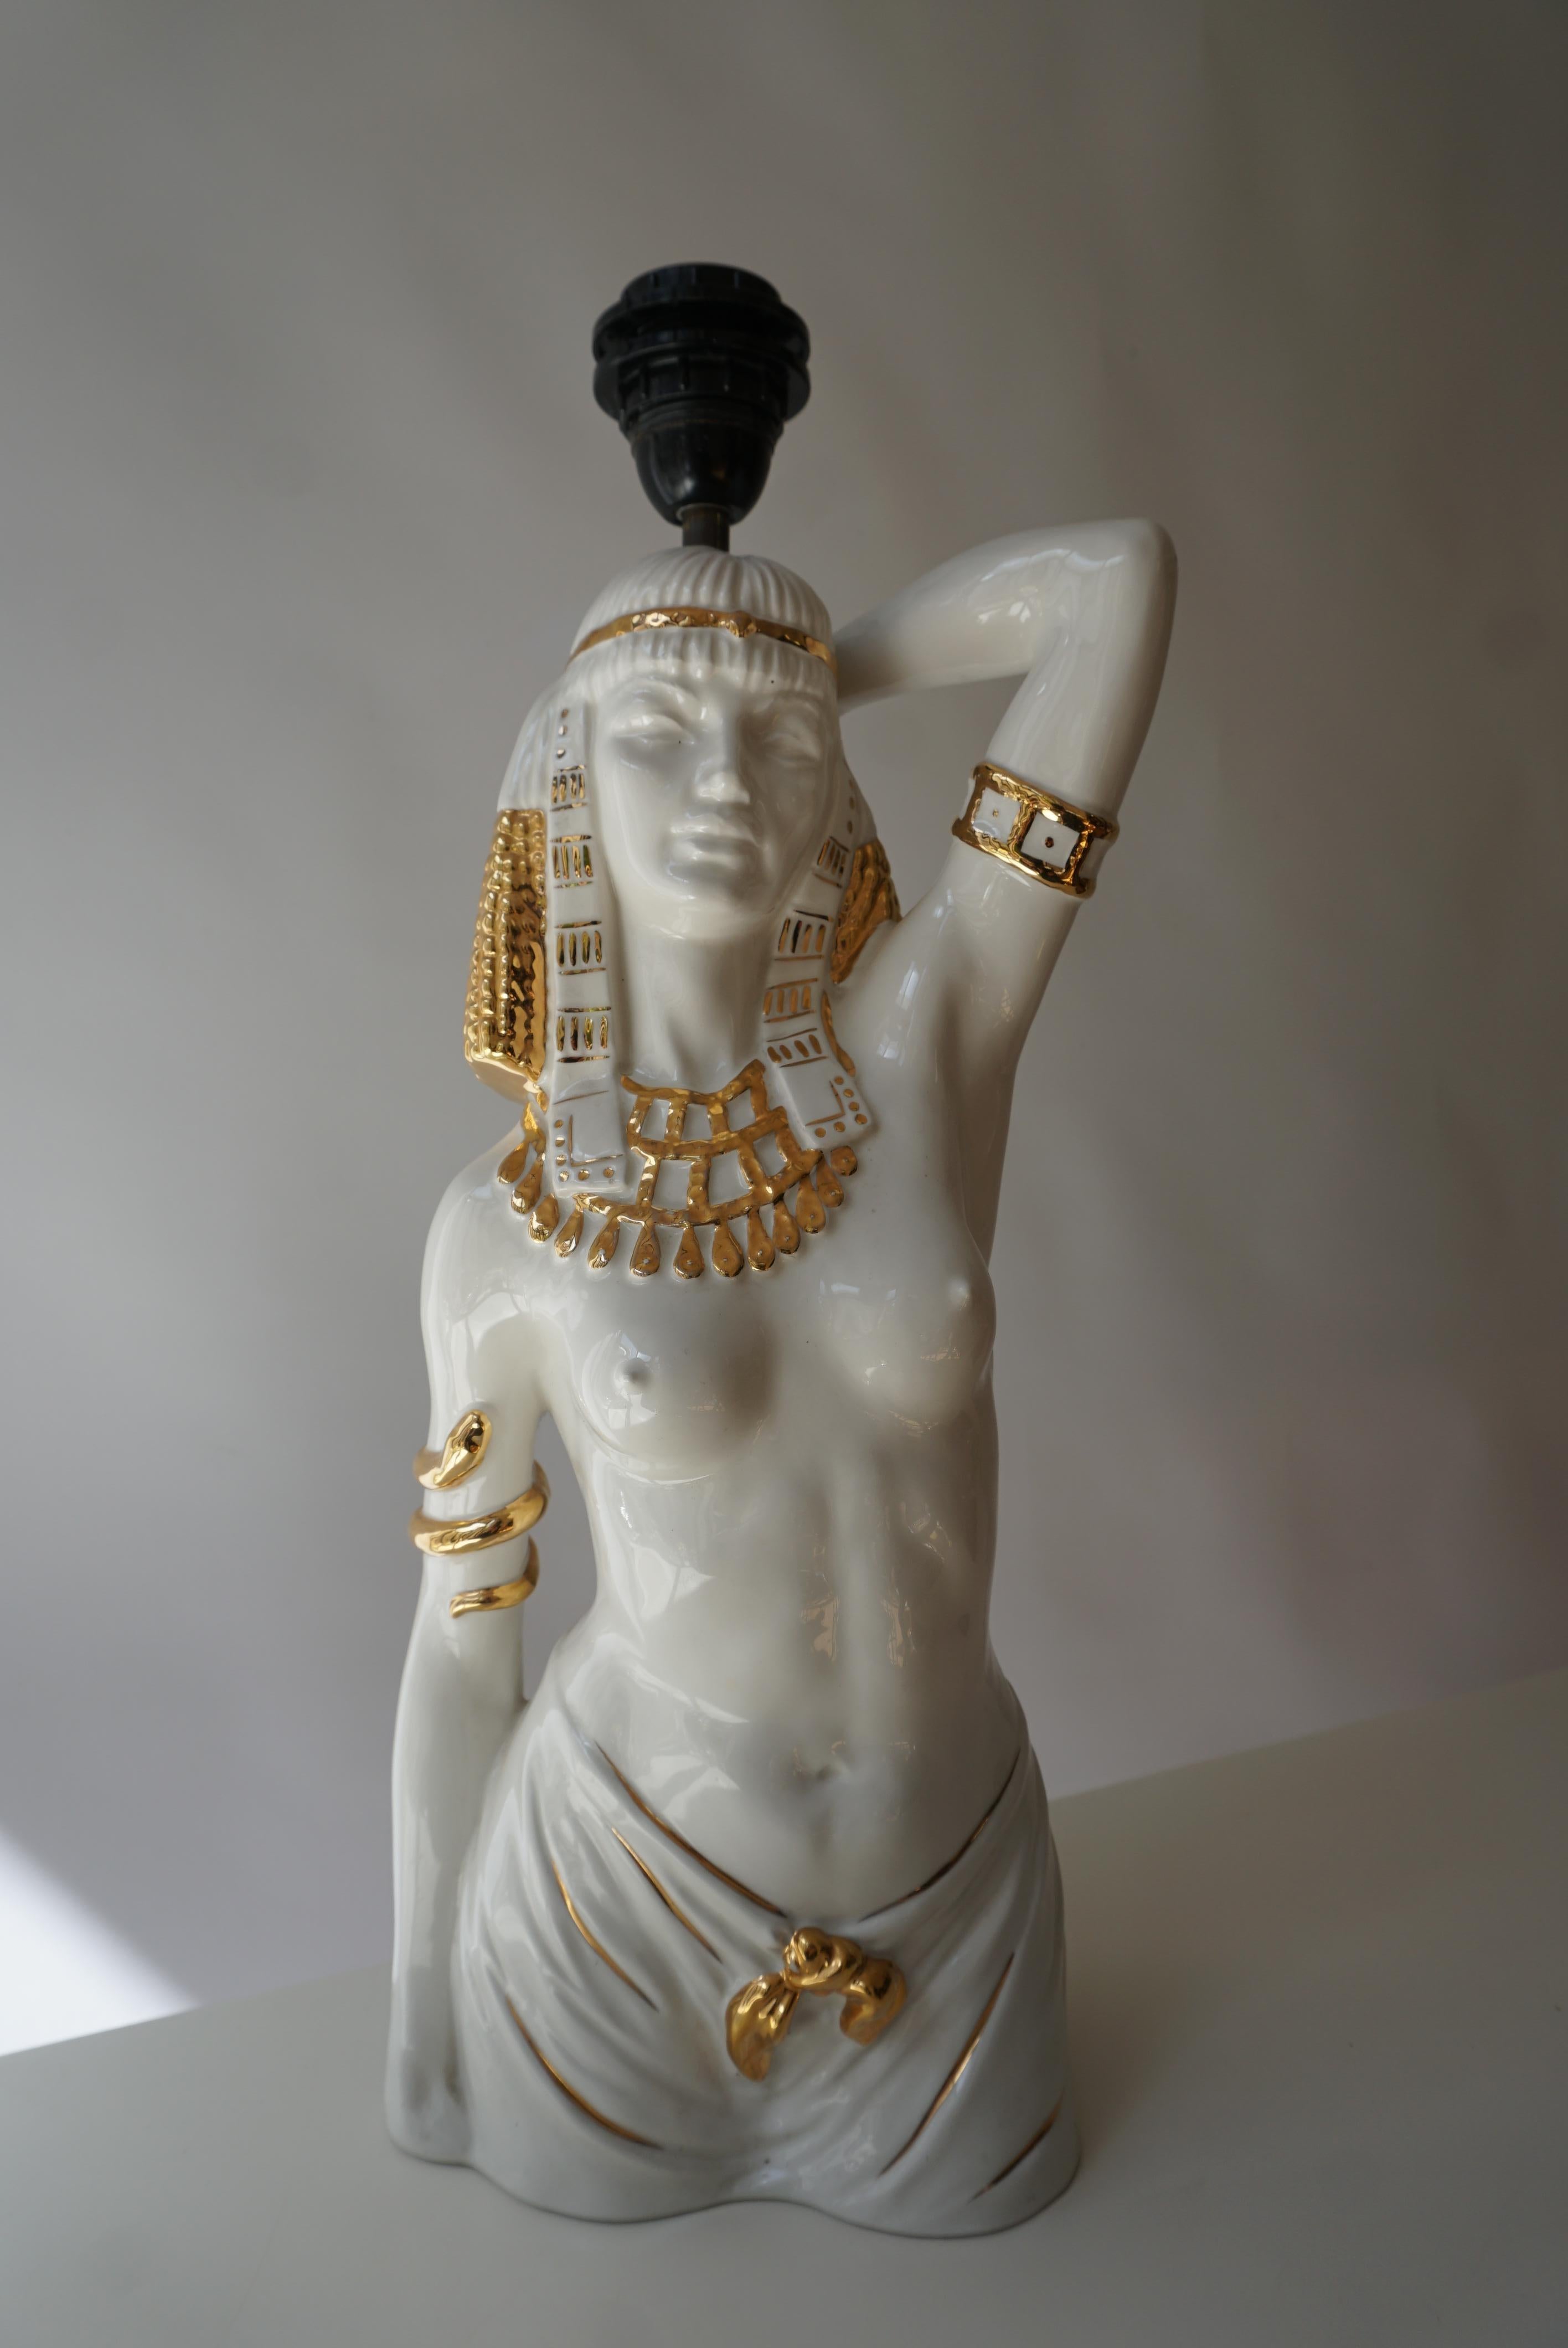 Lampe figurative en céramique de style Art déco représentant une jeune fille égyptienne.

Hauteur 19.2